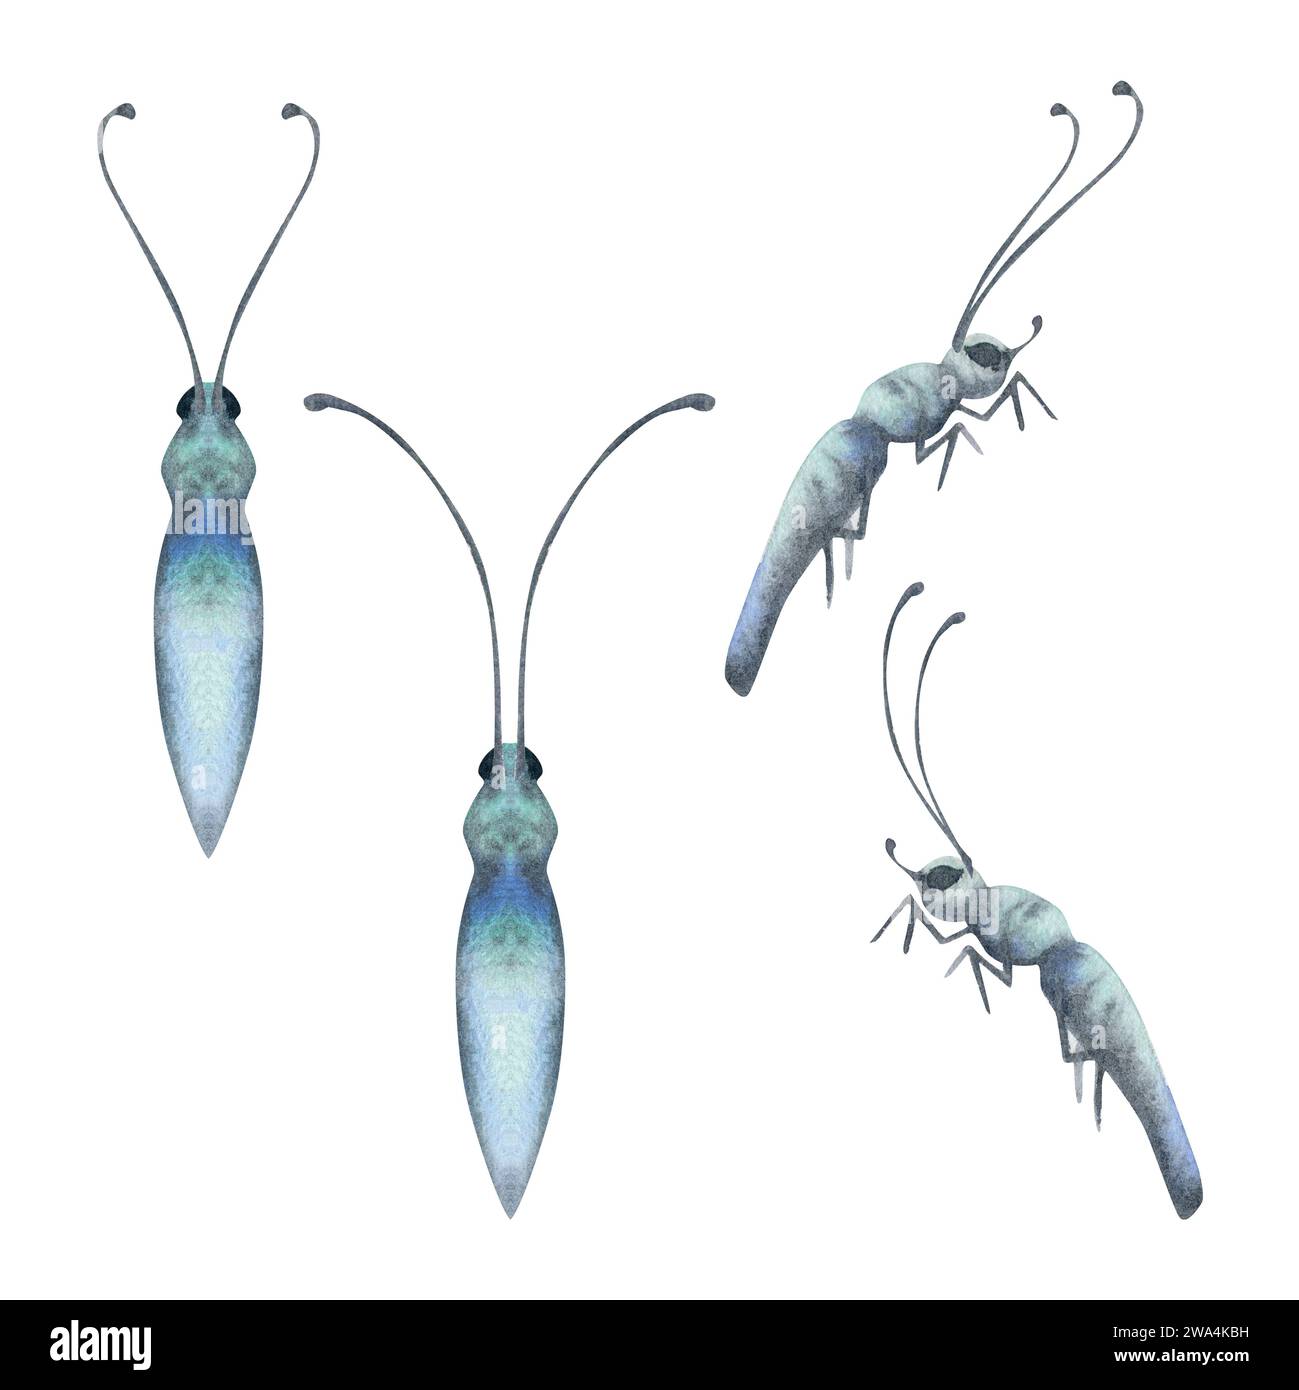 Illustrazione acquerello a mano farfalla insetto vespa formica falena insetto. Corpo realistico con antenne, vista frontale laterale. Set di oggetti isolati su bianco Foto Stock